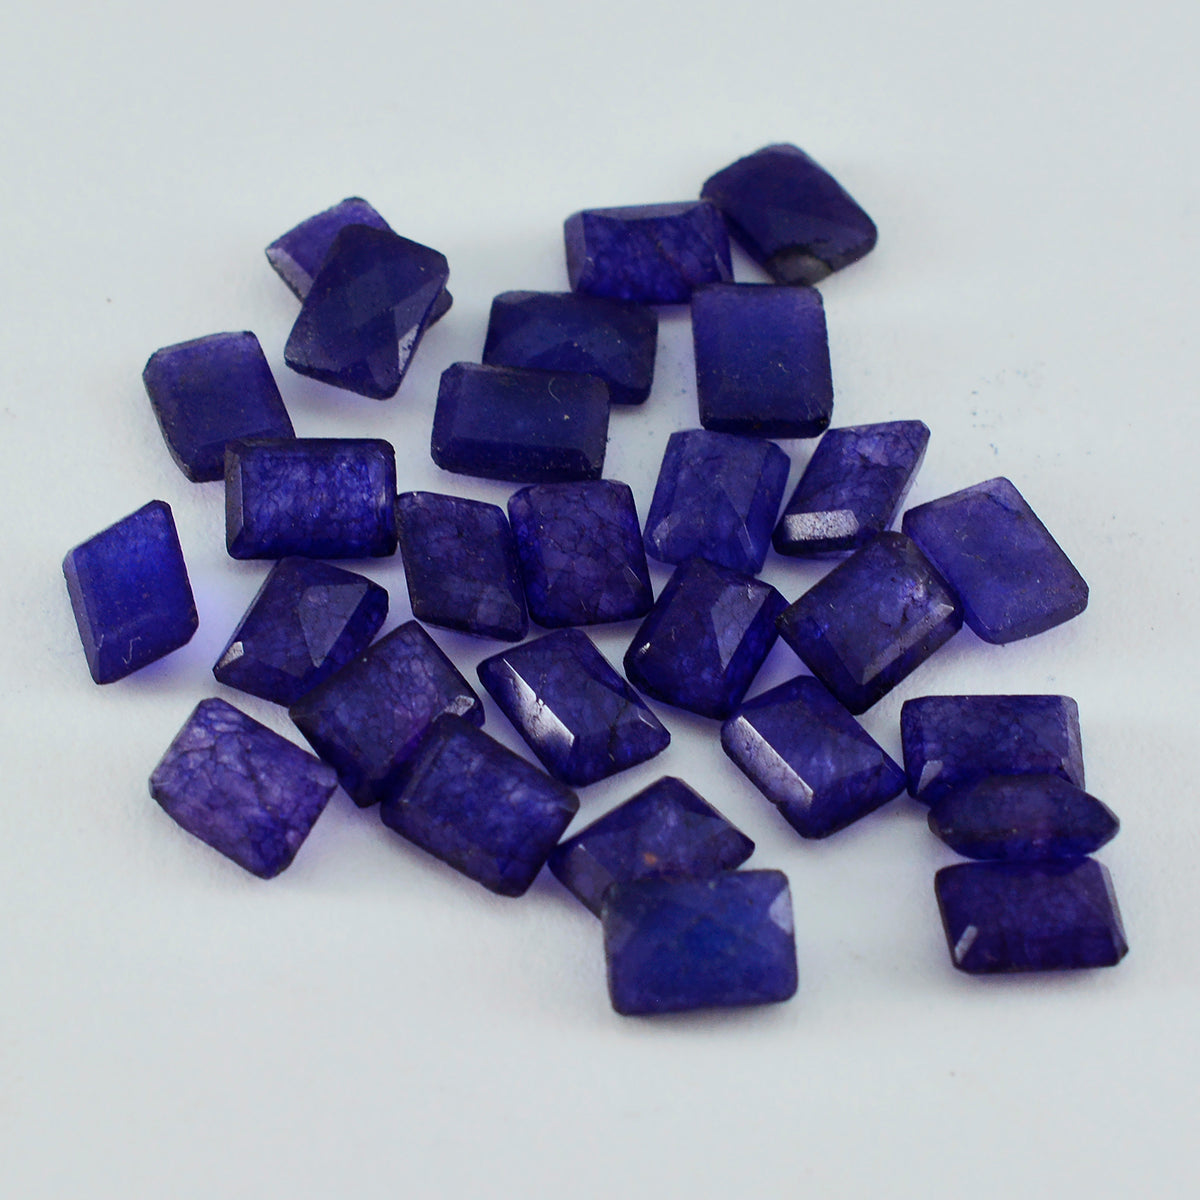 riyogems 1 st naturlig blå jaspis fasetterad 4x6 mm oktagonform ganska kvalitet lösa ädelstenar